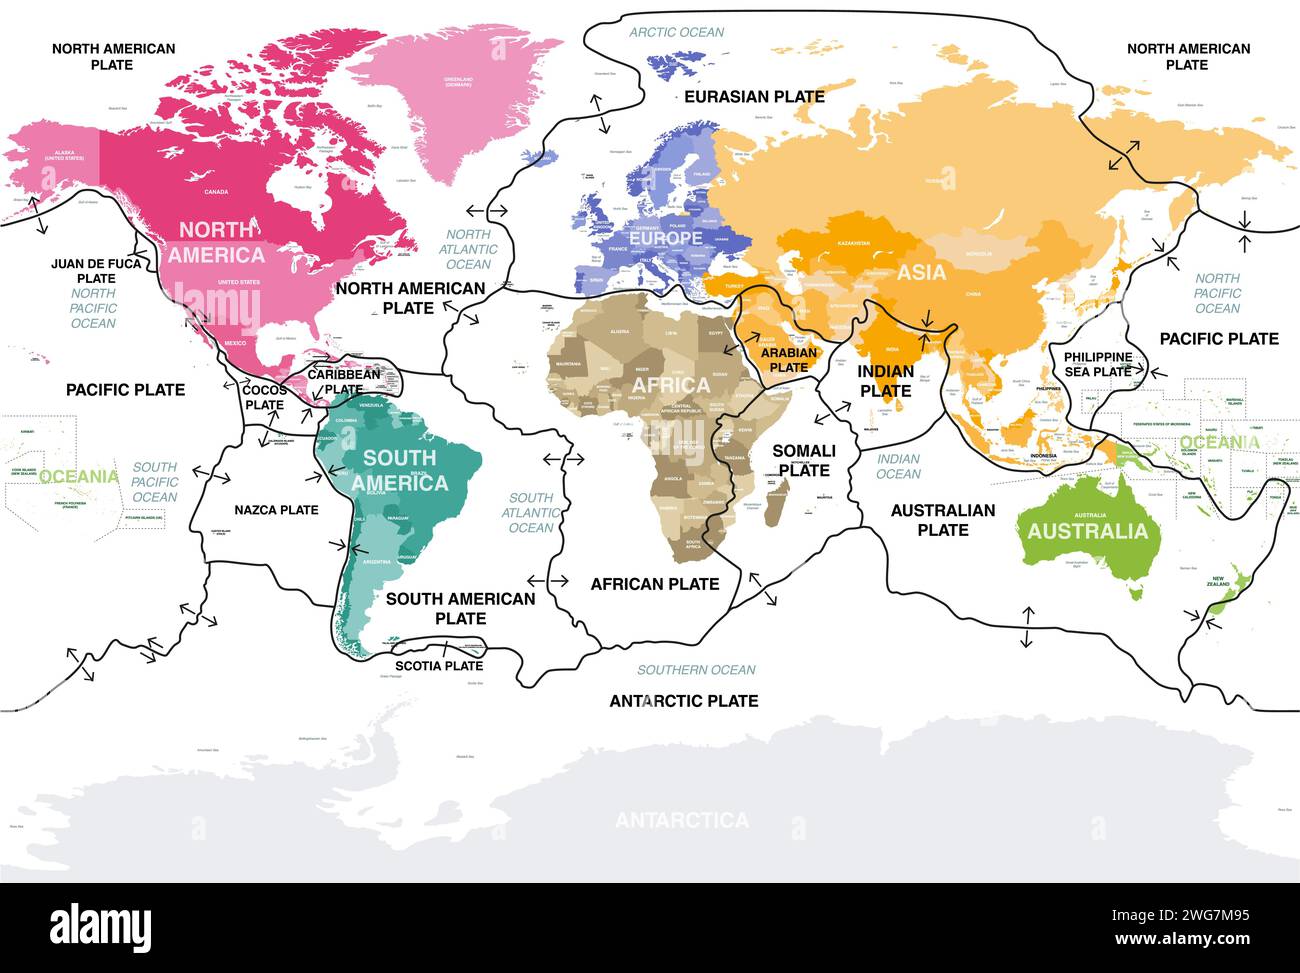 Tektonische Platten auf der Erdoberfläche. Weltkarte mit Namen von Ländern, Kontinenten, Ozeanen, Hauptmeeren und Seen. Vektorabbildung Stock Vektor